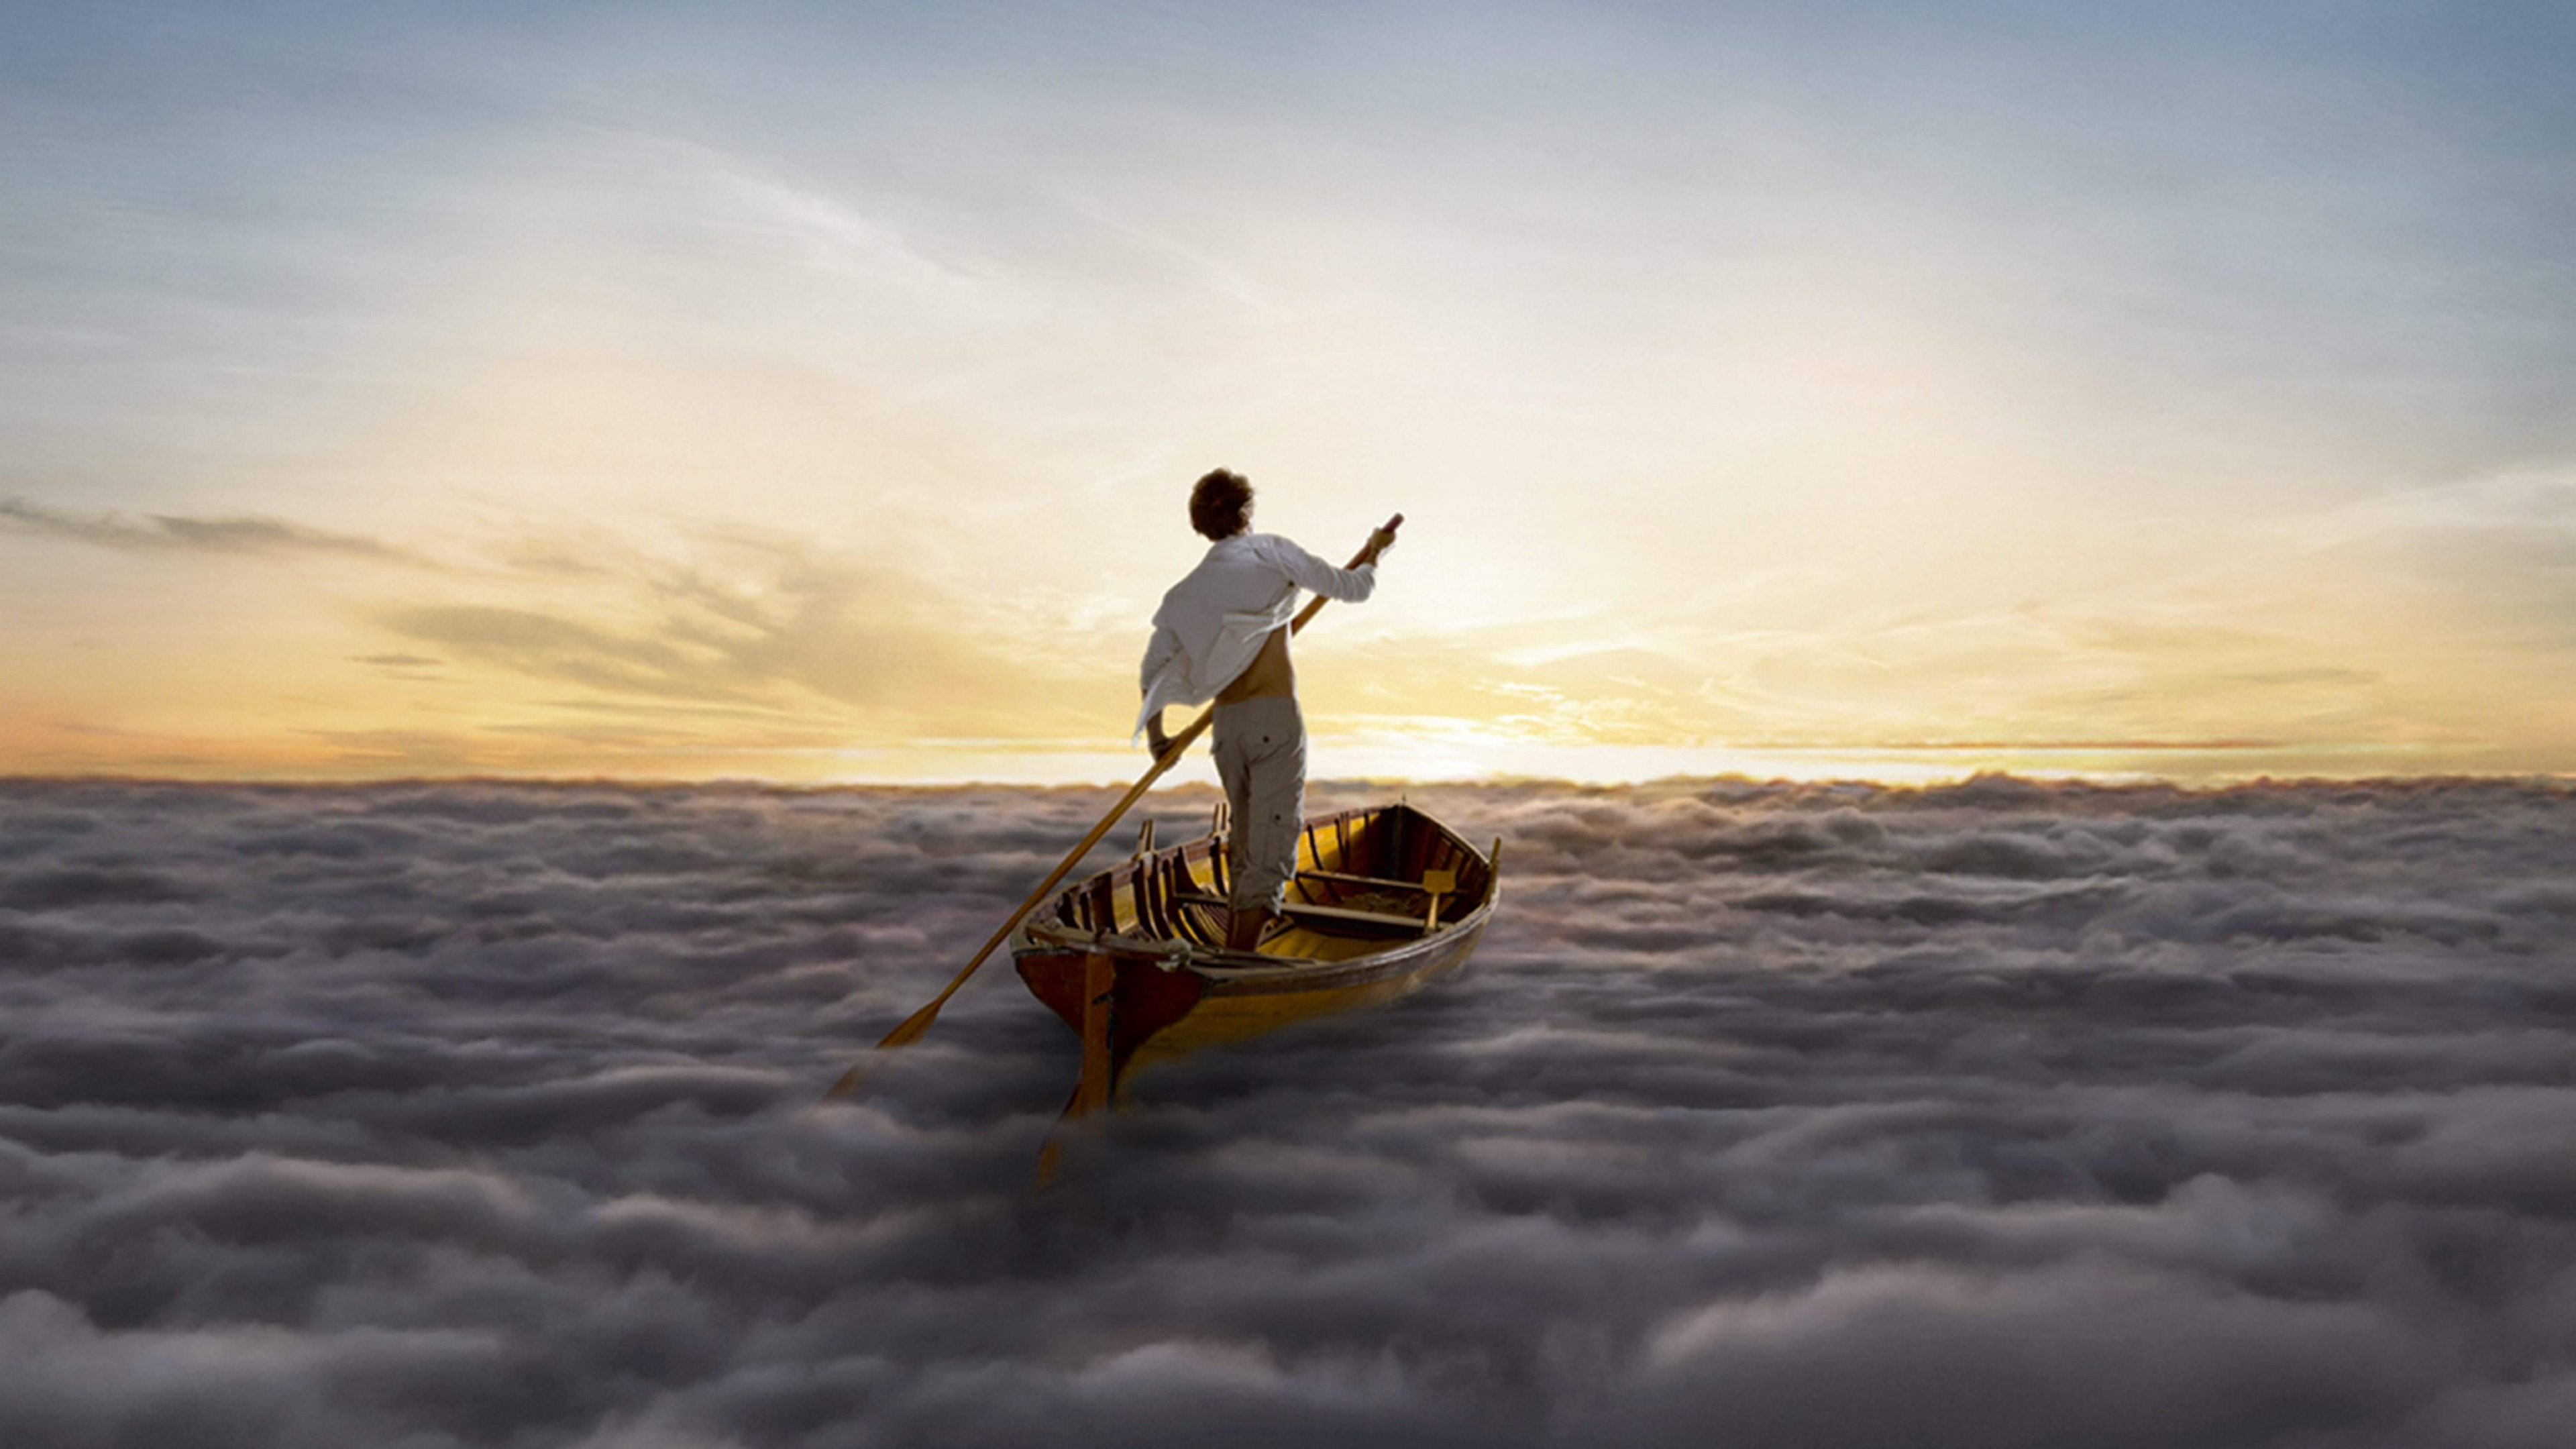 Новые горизонты жизни. Pink Floyd the endless River 2014. Pink Floyd the endless River обложка. Пинк Флойд лодка плывет. Человек в лодке.